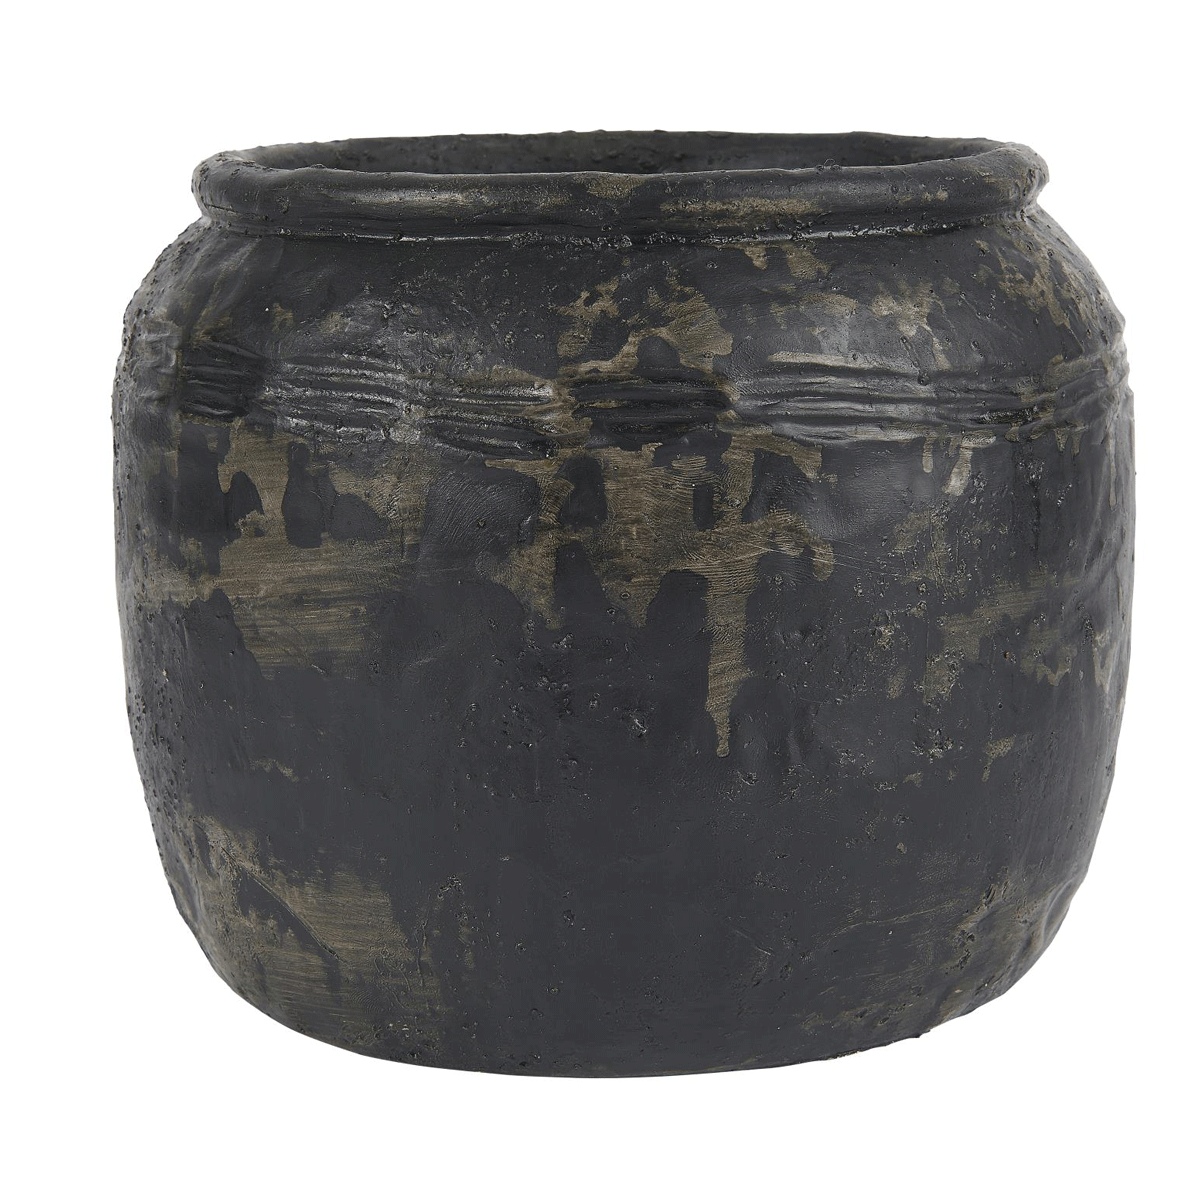 IB Laursen cement Pot Caesar 18 cm diameter 13102-24